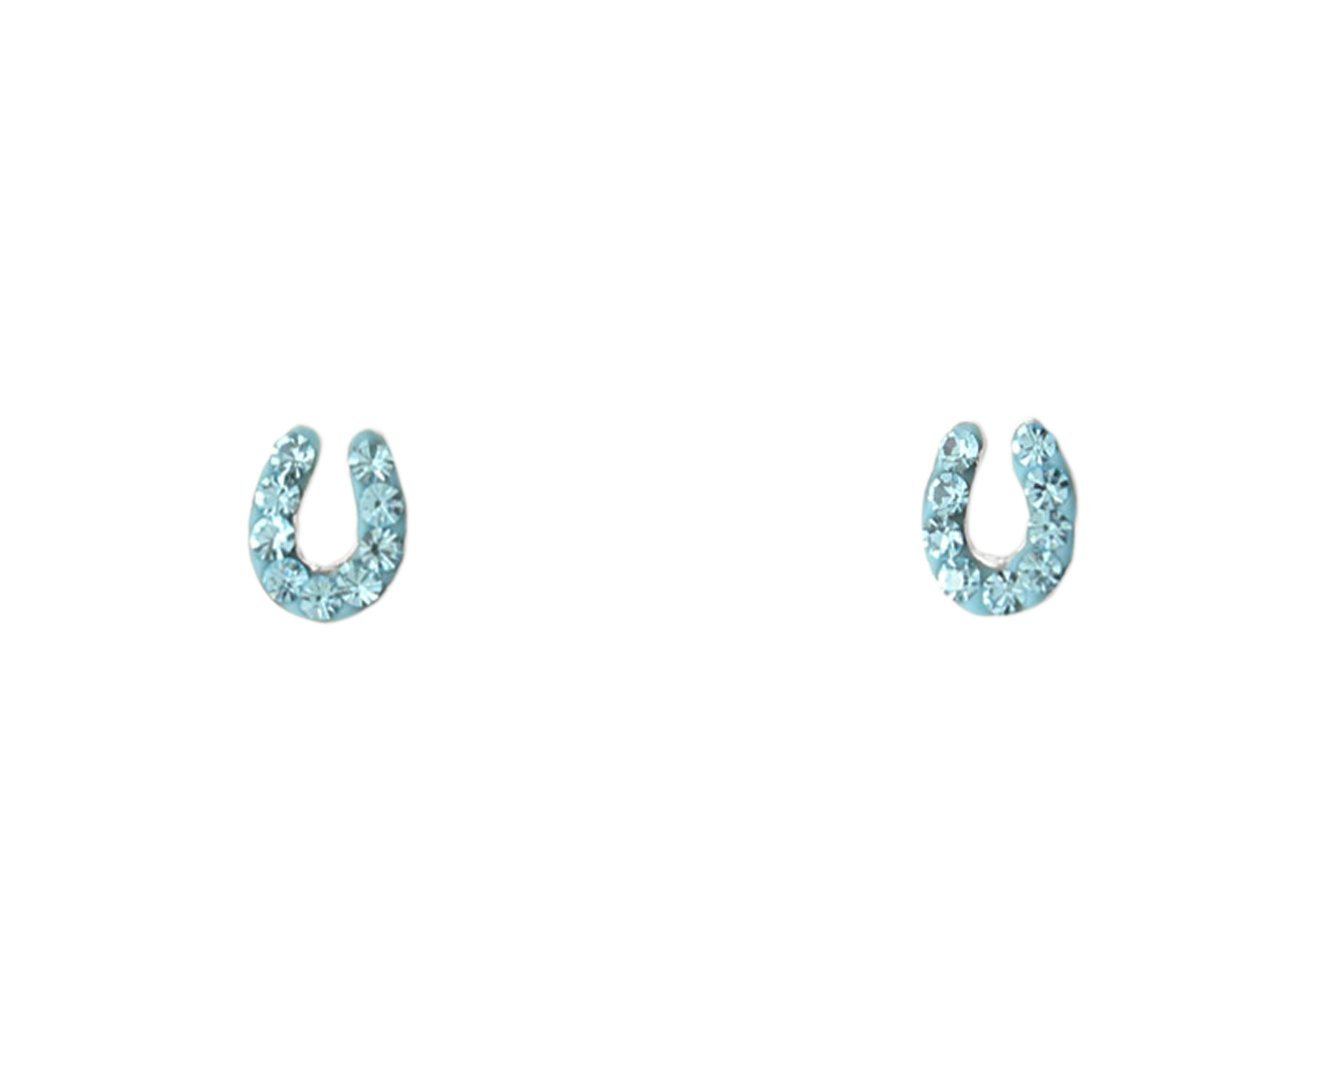 Children's Silver Horseshoe Crystal Earring Set